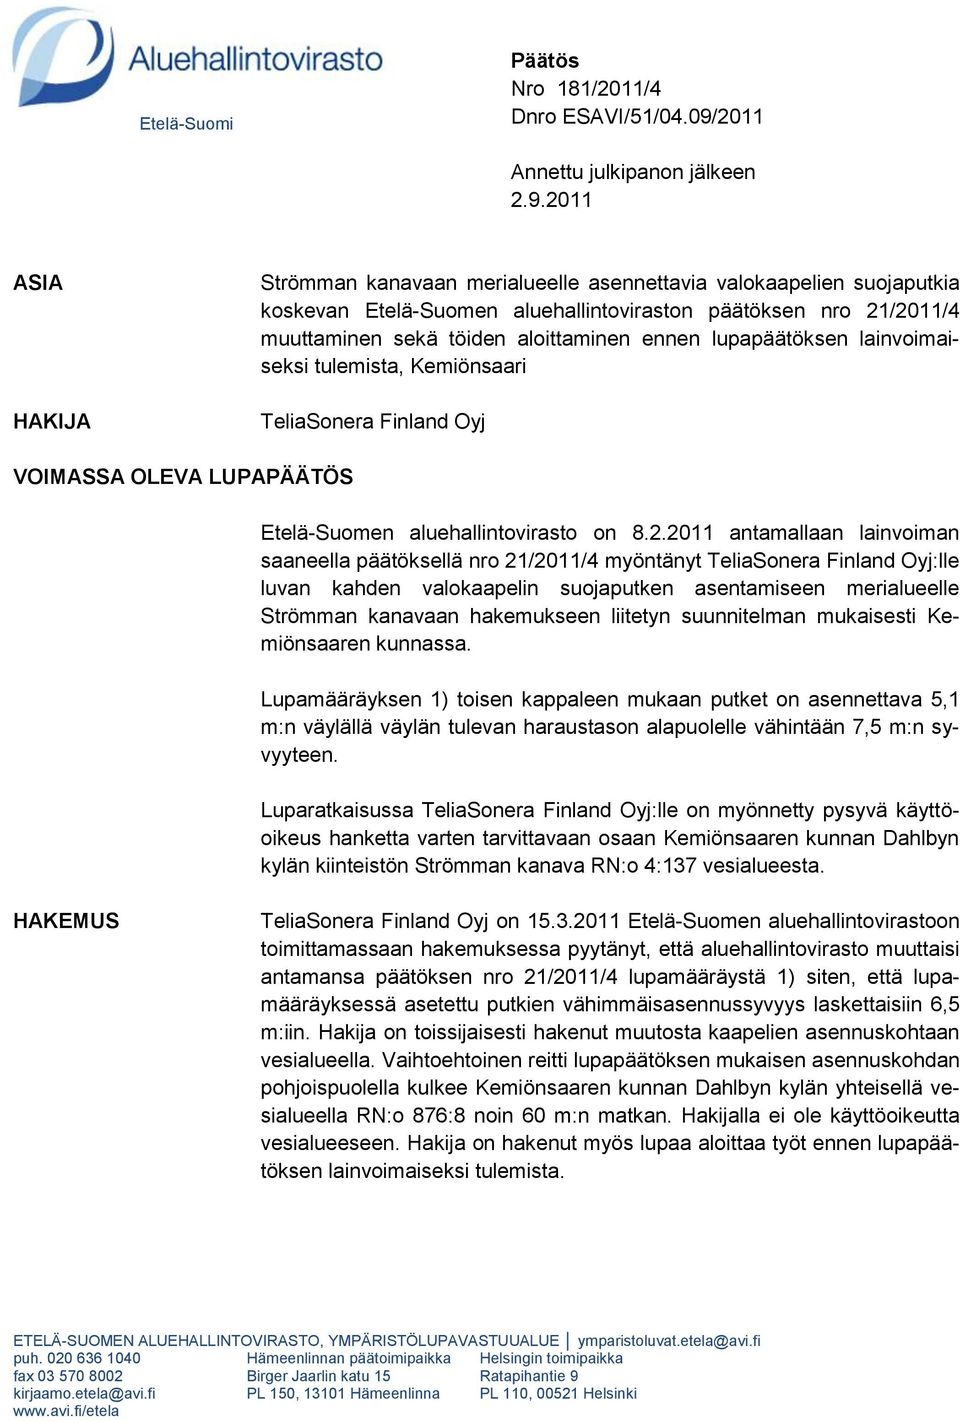 2011 ASIA HAKIJA Strömman kanavaan merialueelle asennettavia valokaapelien suojaputkia koskevan Etelä-Suomen aluehallintoviraston päätöksen nro 21/2011/4 muuttaminen sekä töiden aloittaminen ennen